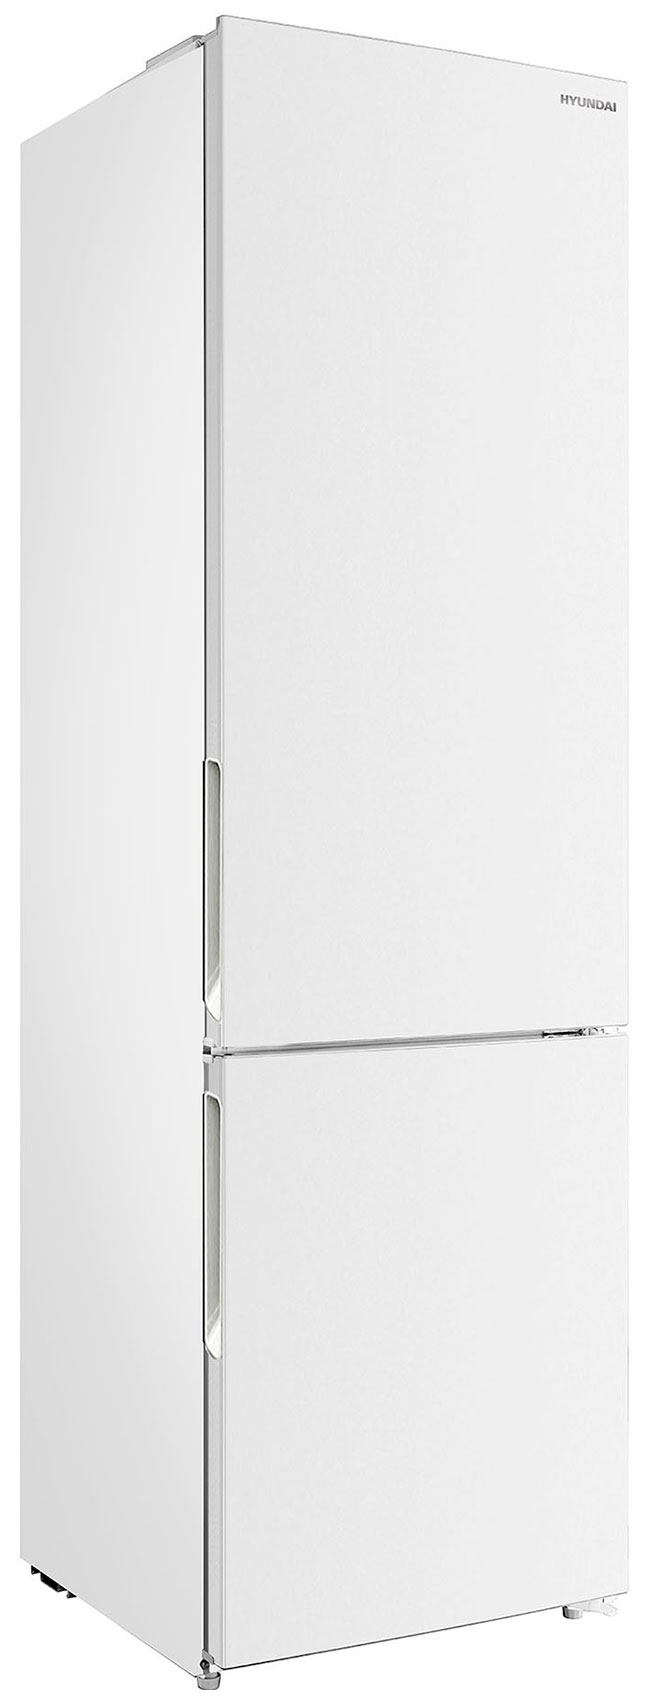 Двухкамерный холодильник Hyundai CC3593FWT белый двухкамерный холодильник hyundai cc3593fwt белый